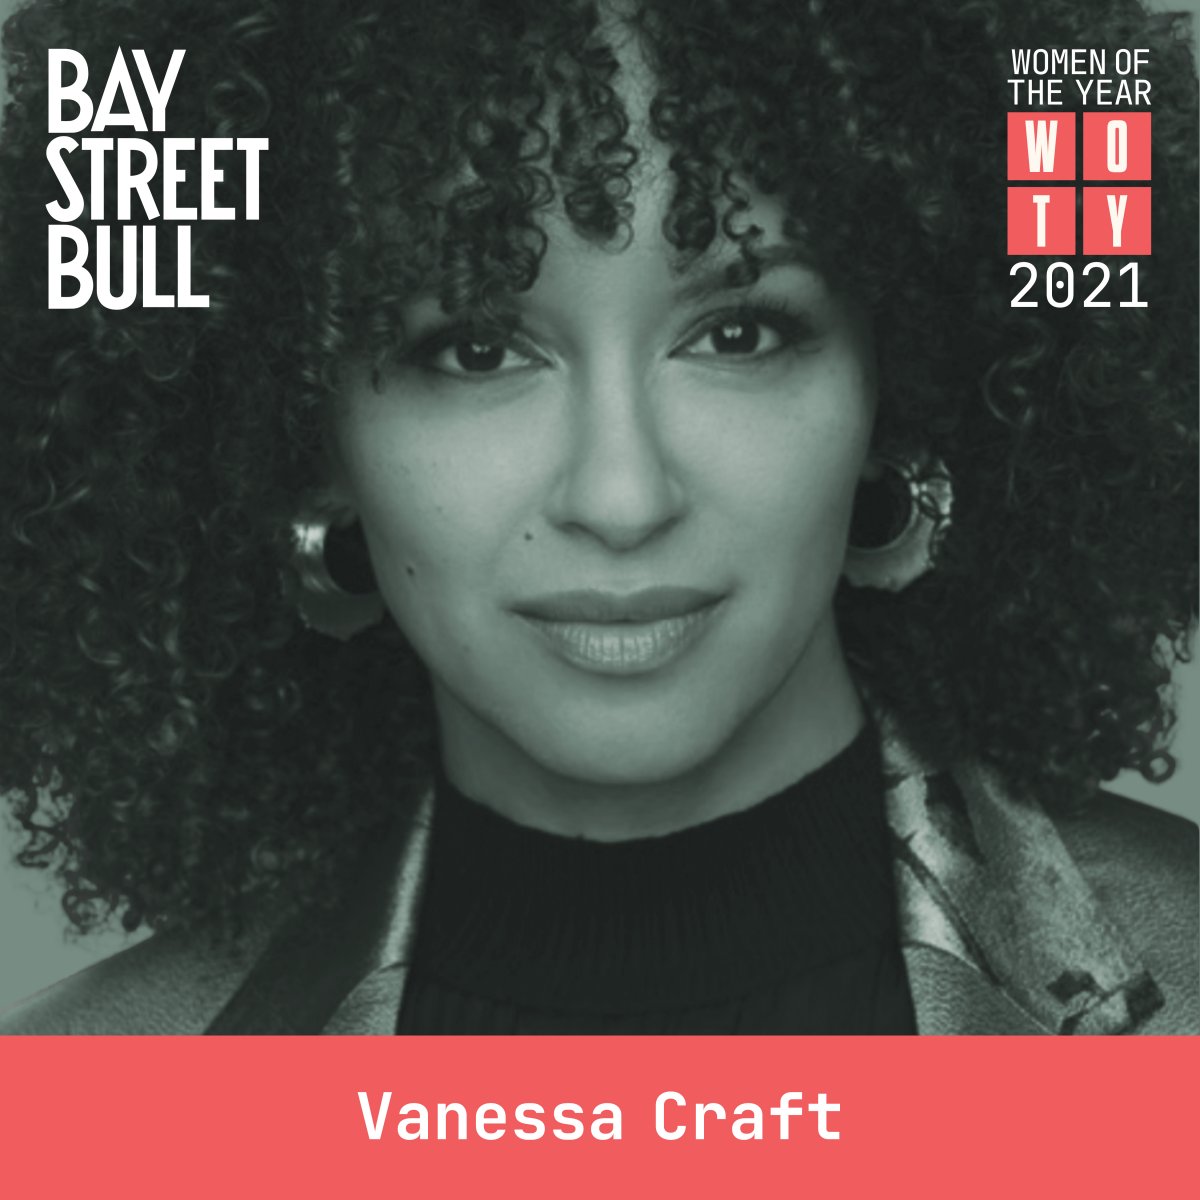 Black and white image of Vanessa Craft